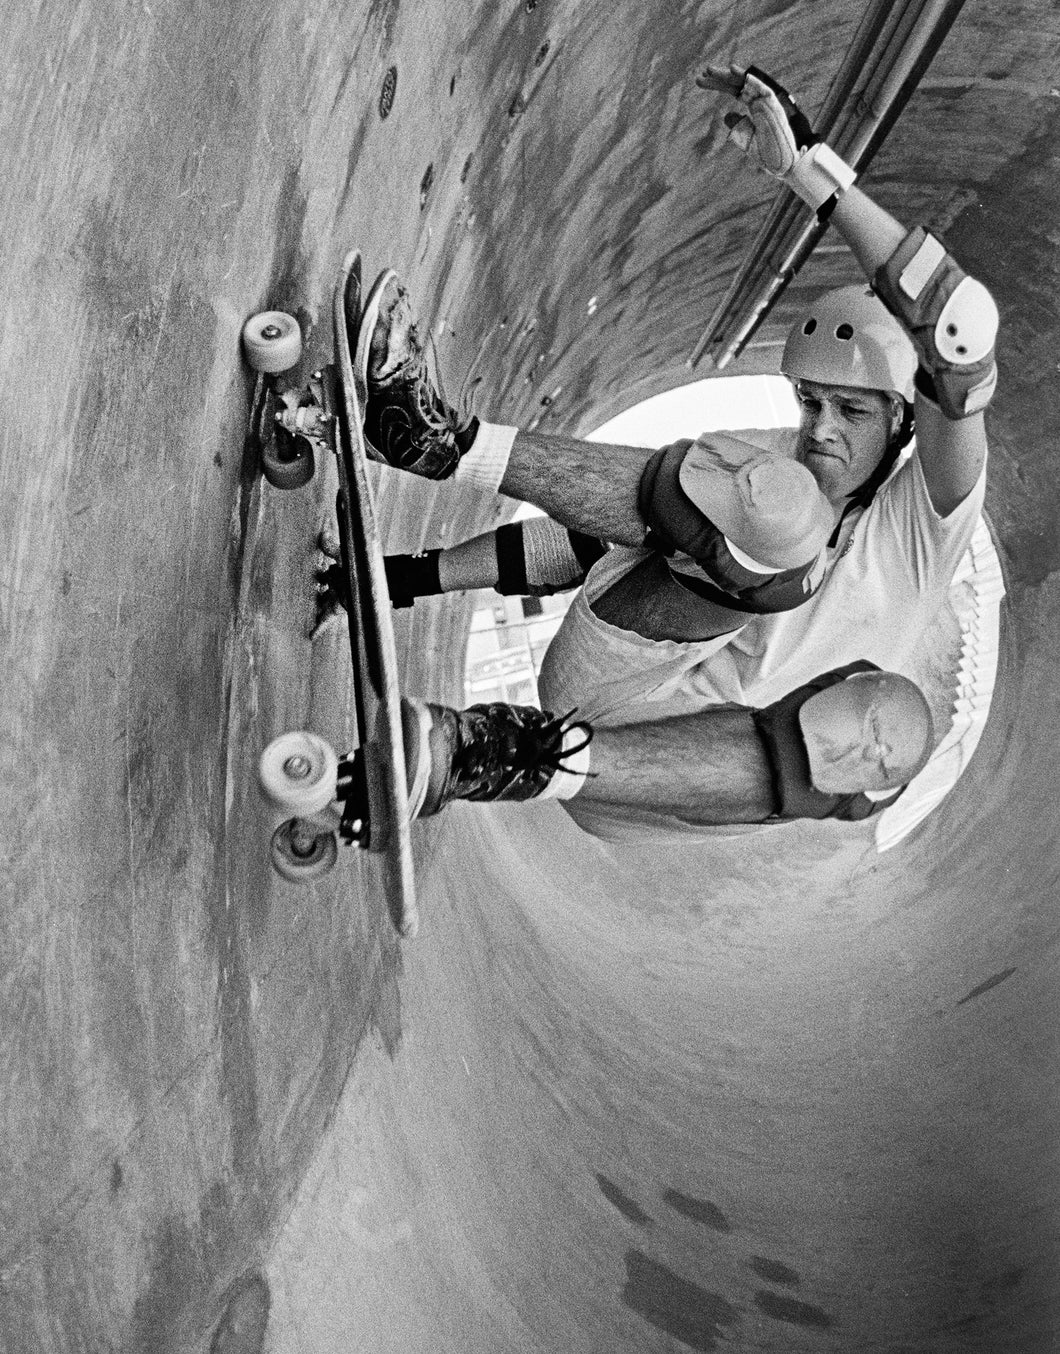 Chris Miller Full Pipe Upland Pipeline Skatepark Pole Cam B&W 1986